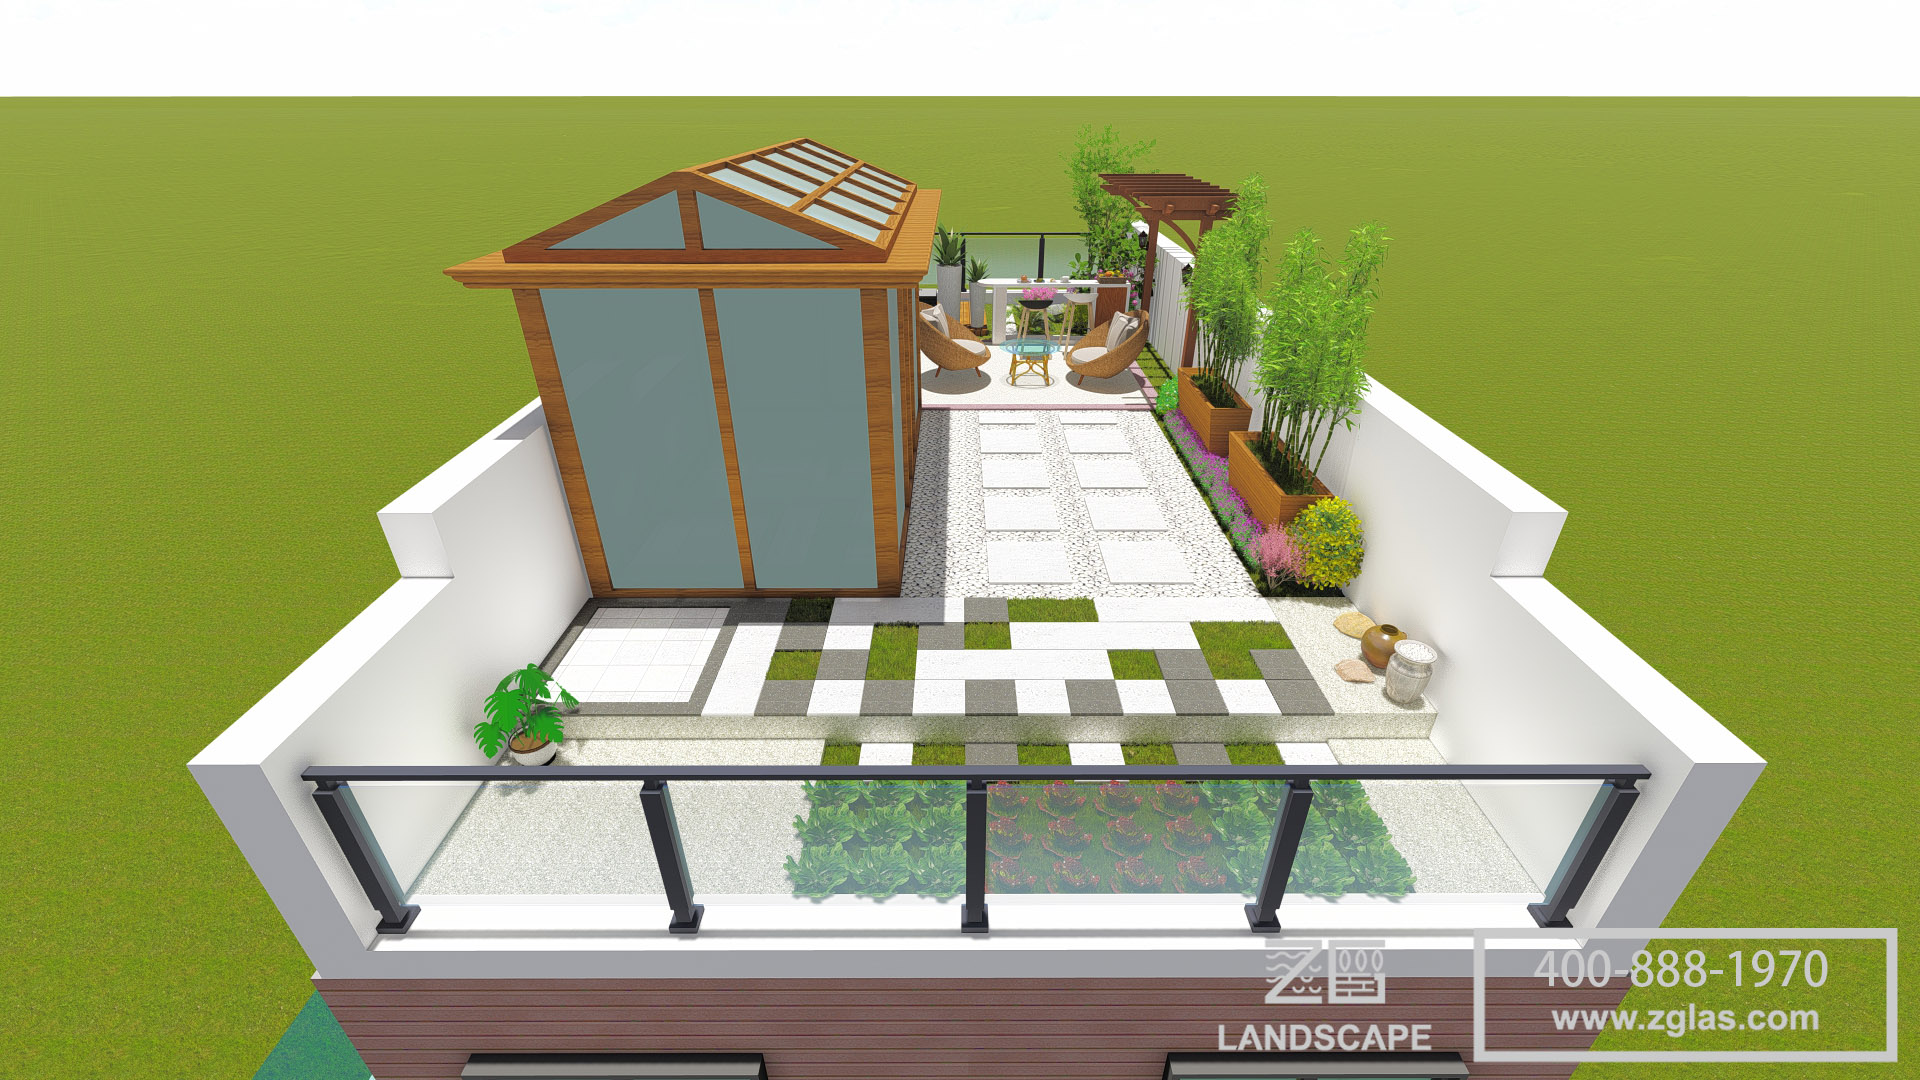 屋顶花园及庭院景观全套CAD施工图纸-屋顶花园-筑龙园林景观论坛